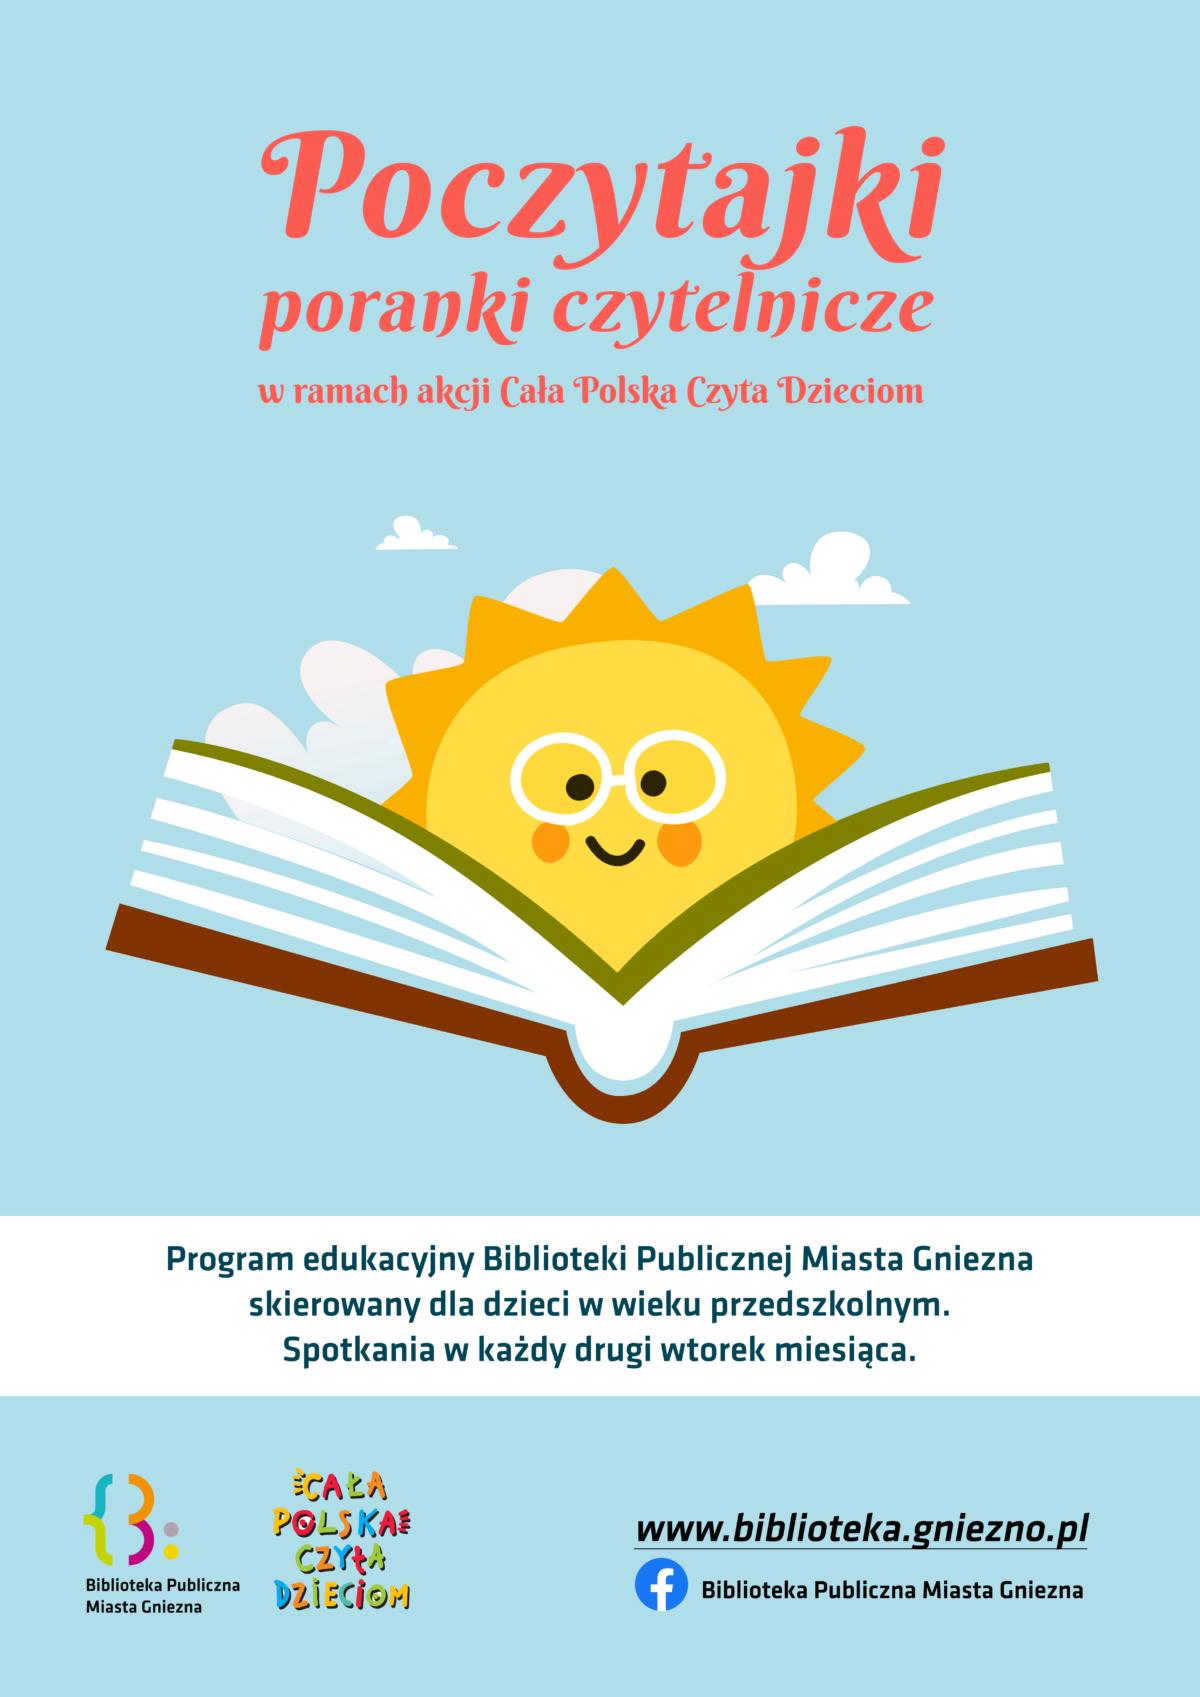 “Poczytajki” – Poranki czytelnicze w ramach akcji Cała Polska Czyta Dzieciom